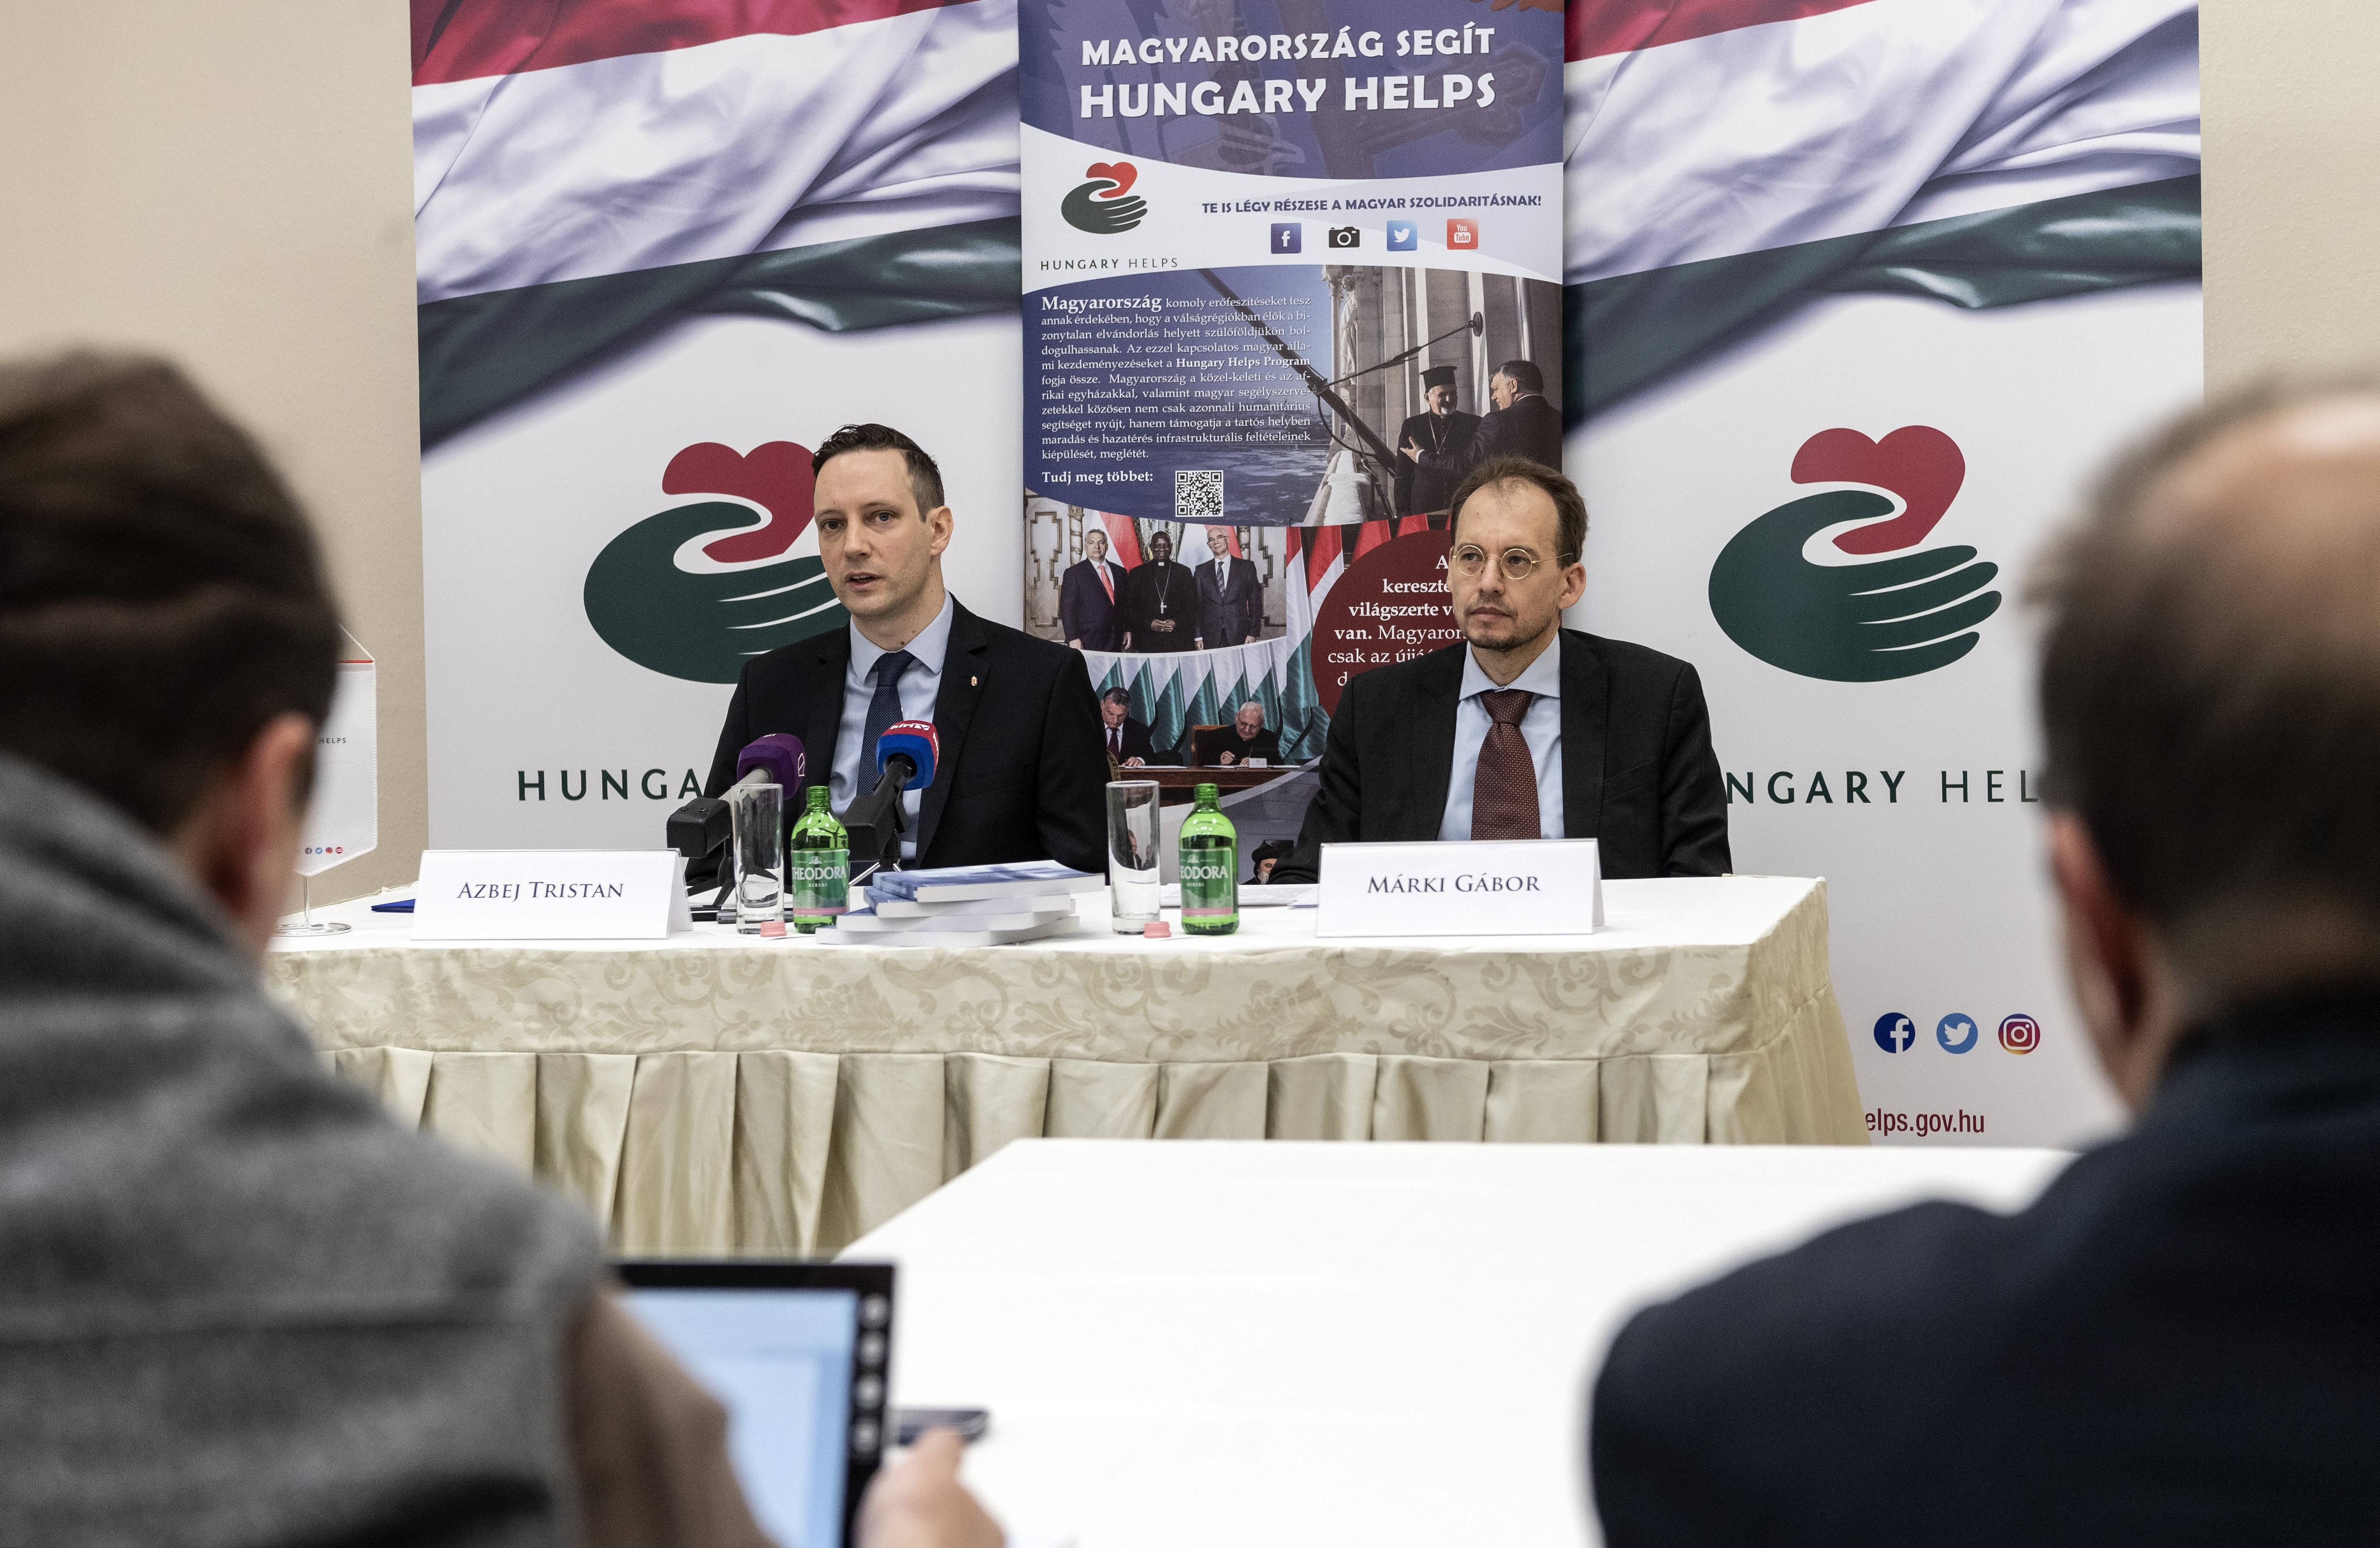 हंगरी सहायता एजेंसी का गठन